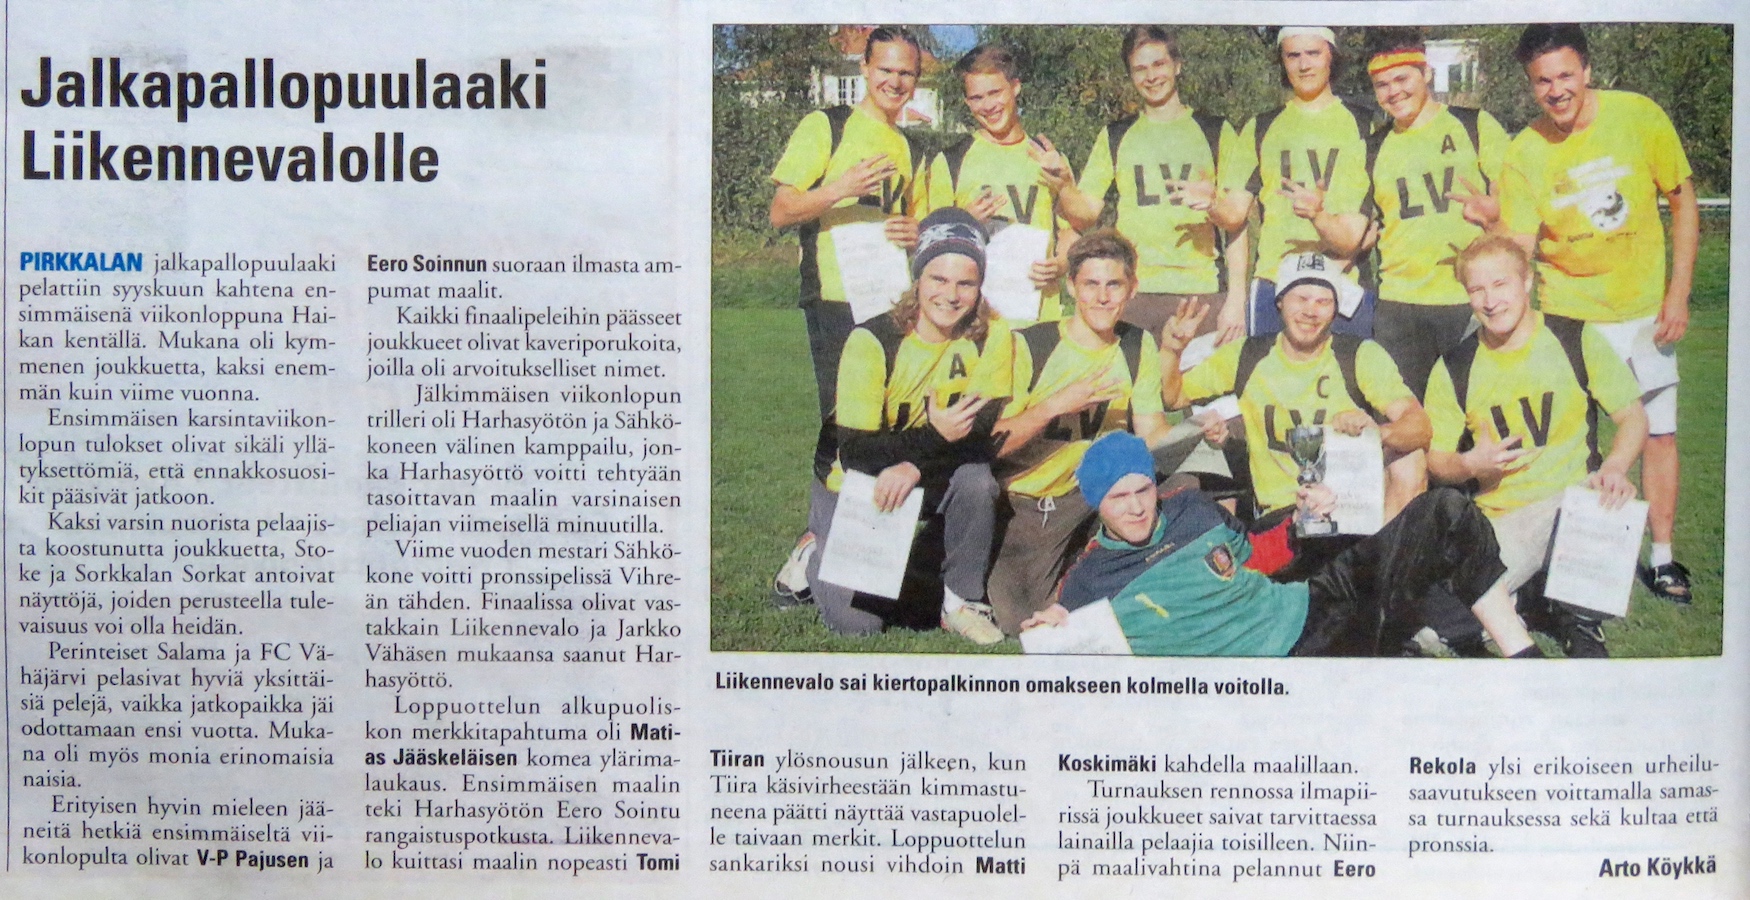 Turnausraportti Pirkkalaisessa 26.09. 2012